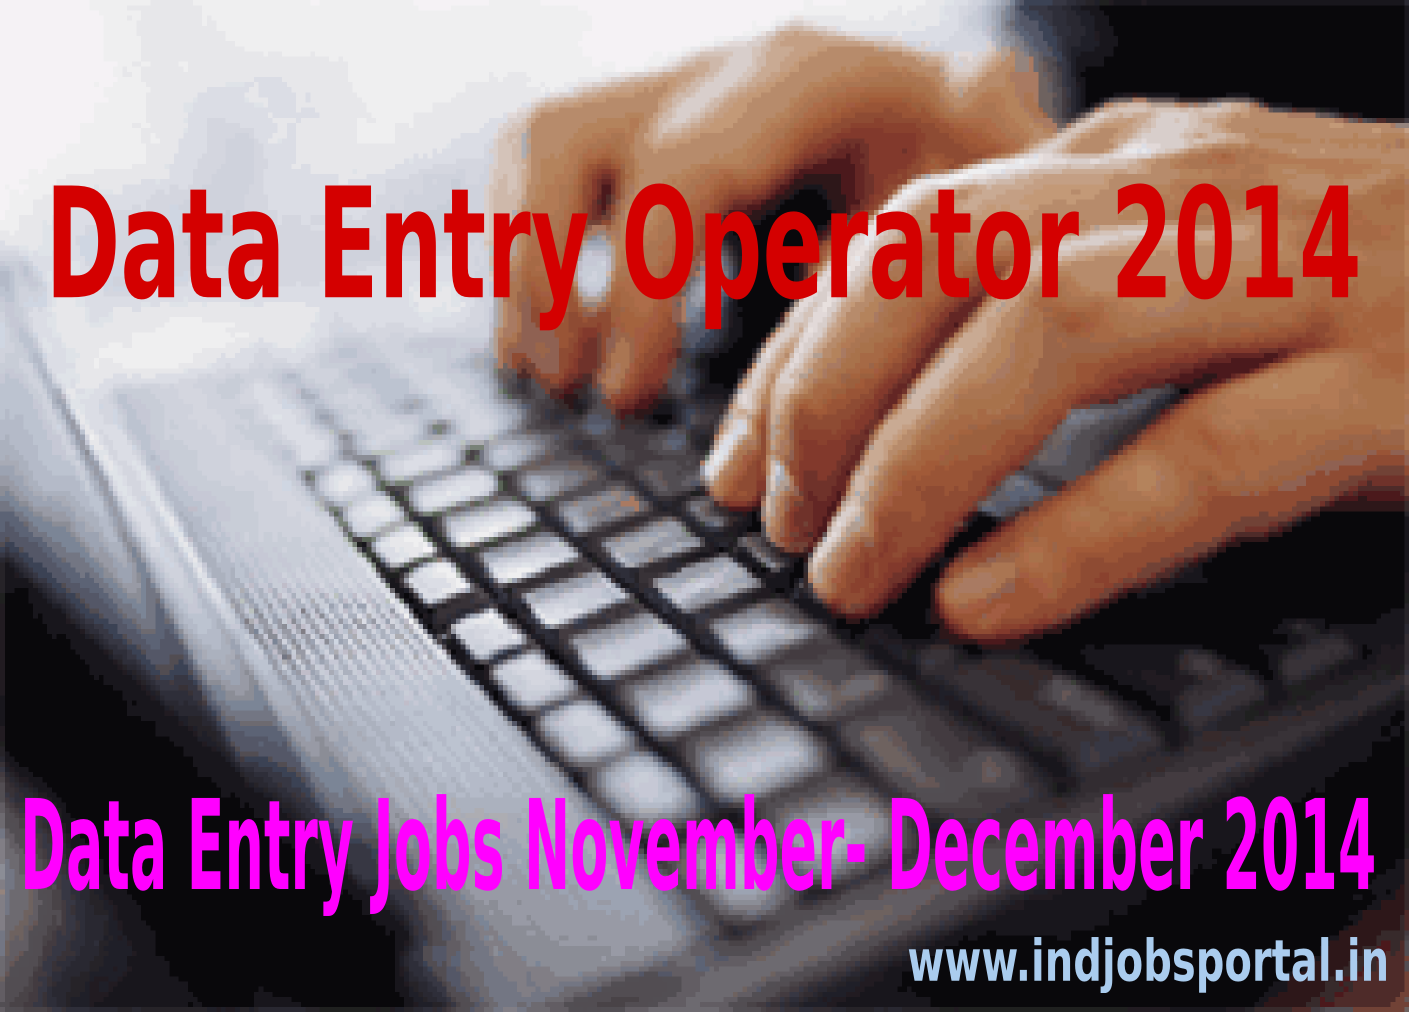 Data Entry Operator, Data Entry Jobs November-December 2014